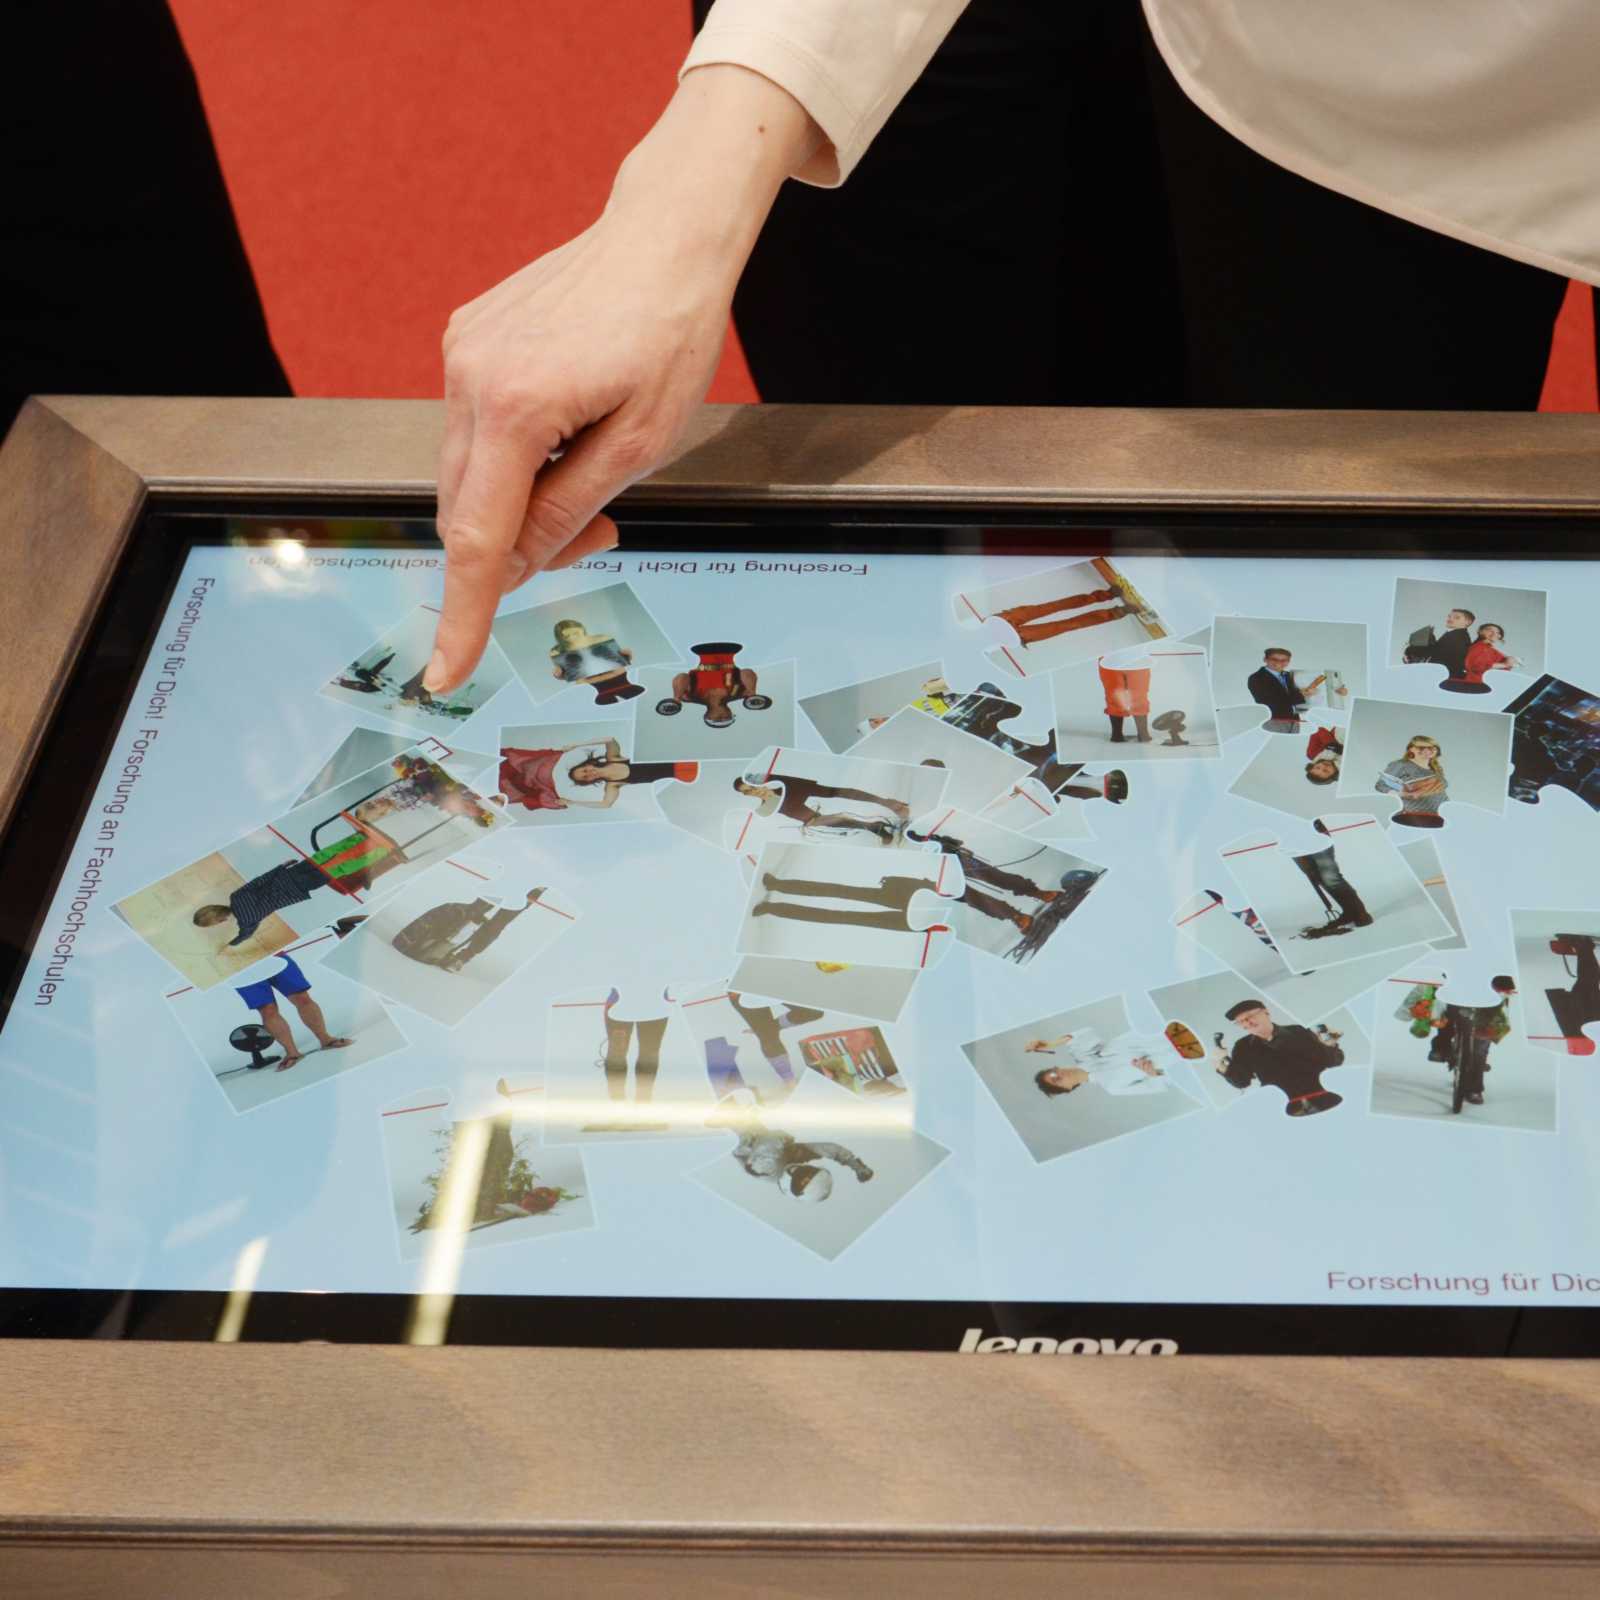 Ein Multi-Touch-Table ermöglicht einen interaktiven Zugang zu den Arbeiten. (Foto: FH Münster)